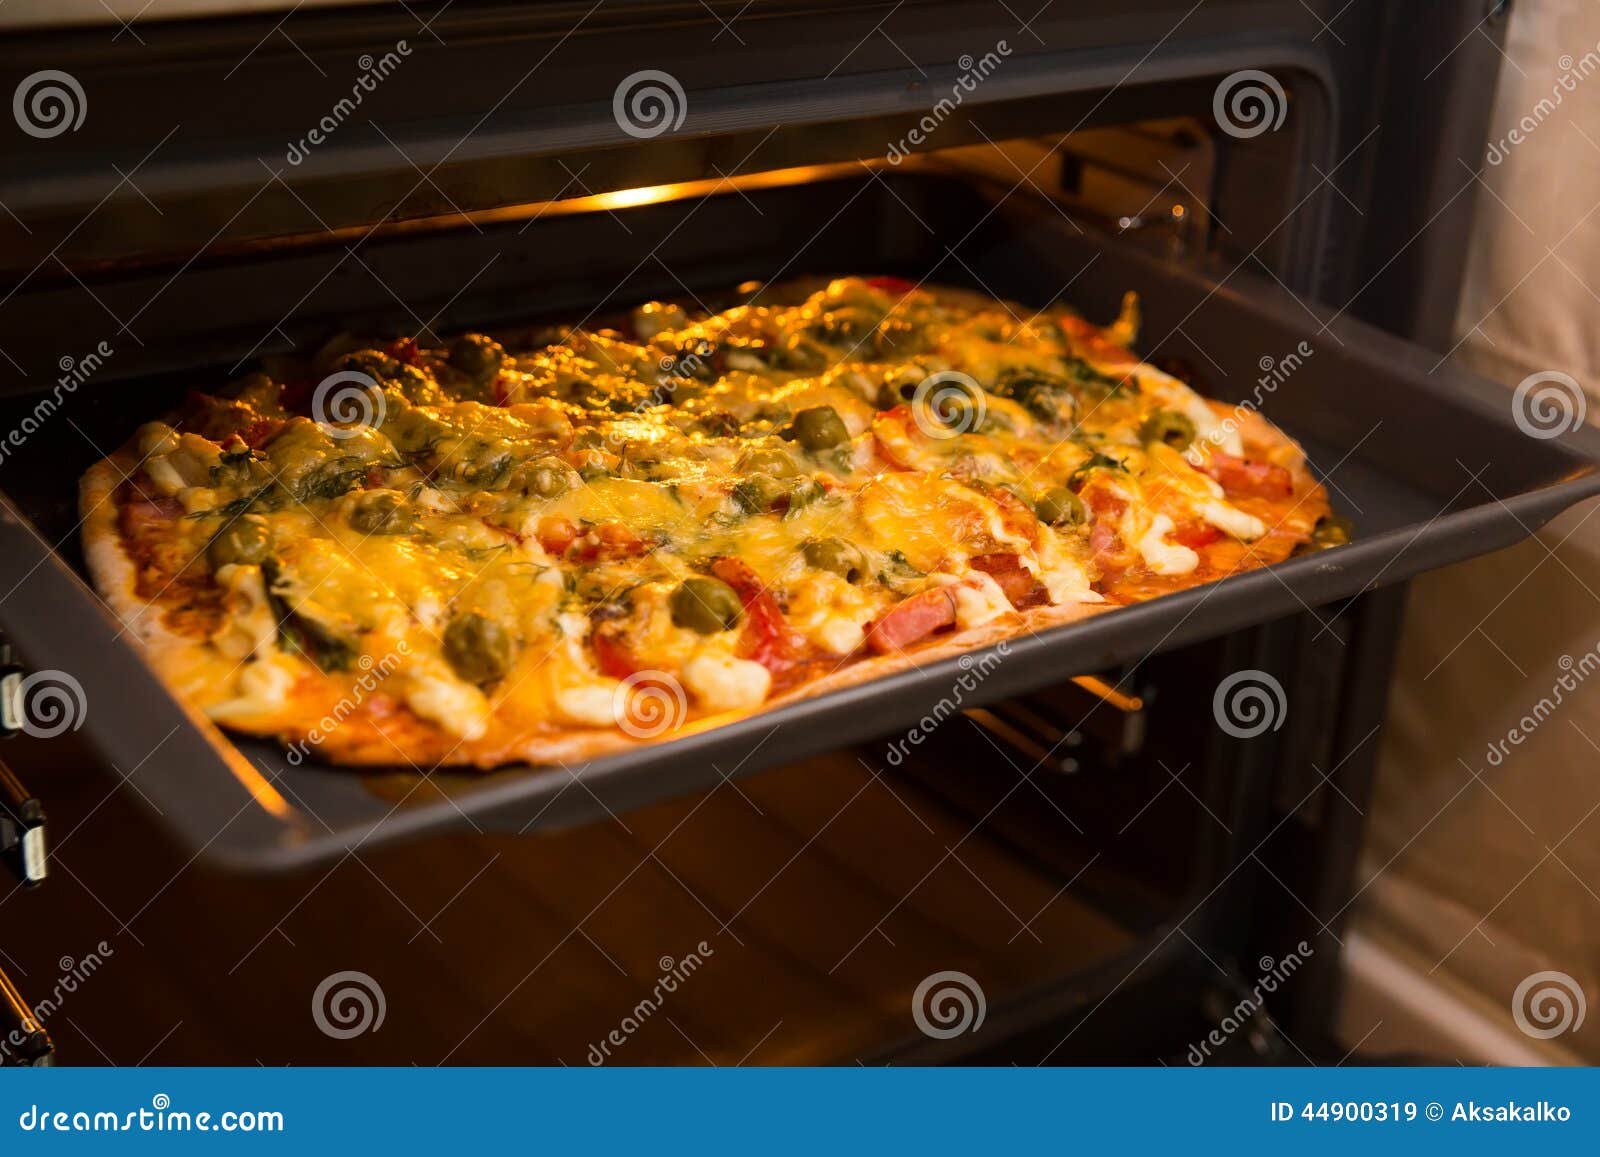 ютуб рецепт пиццы в духовке в домашних условиях фото 50